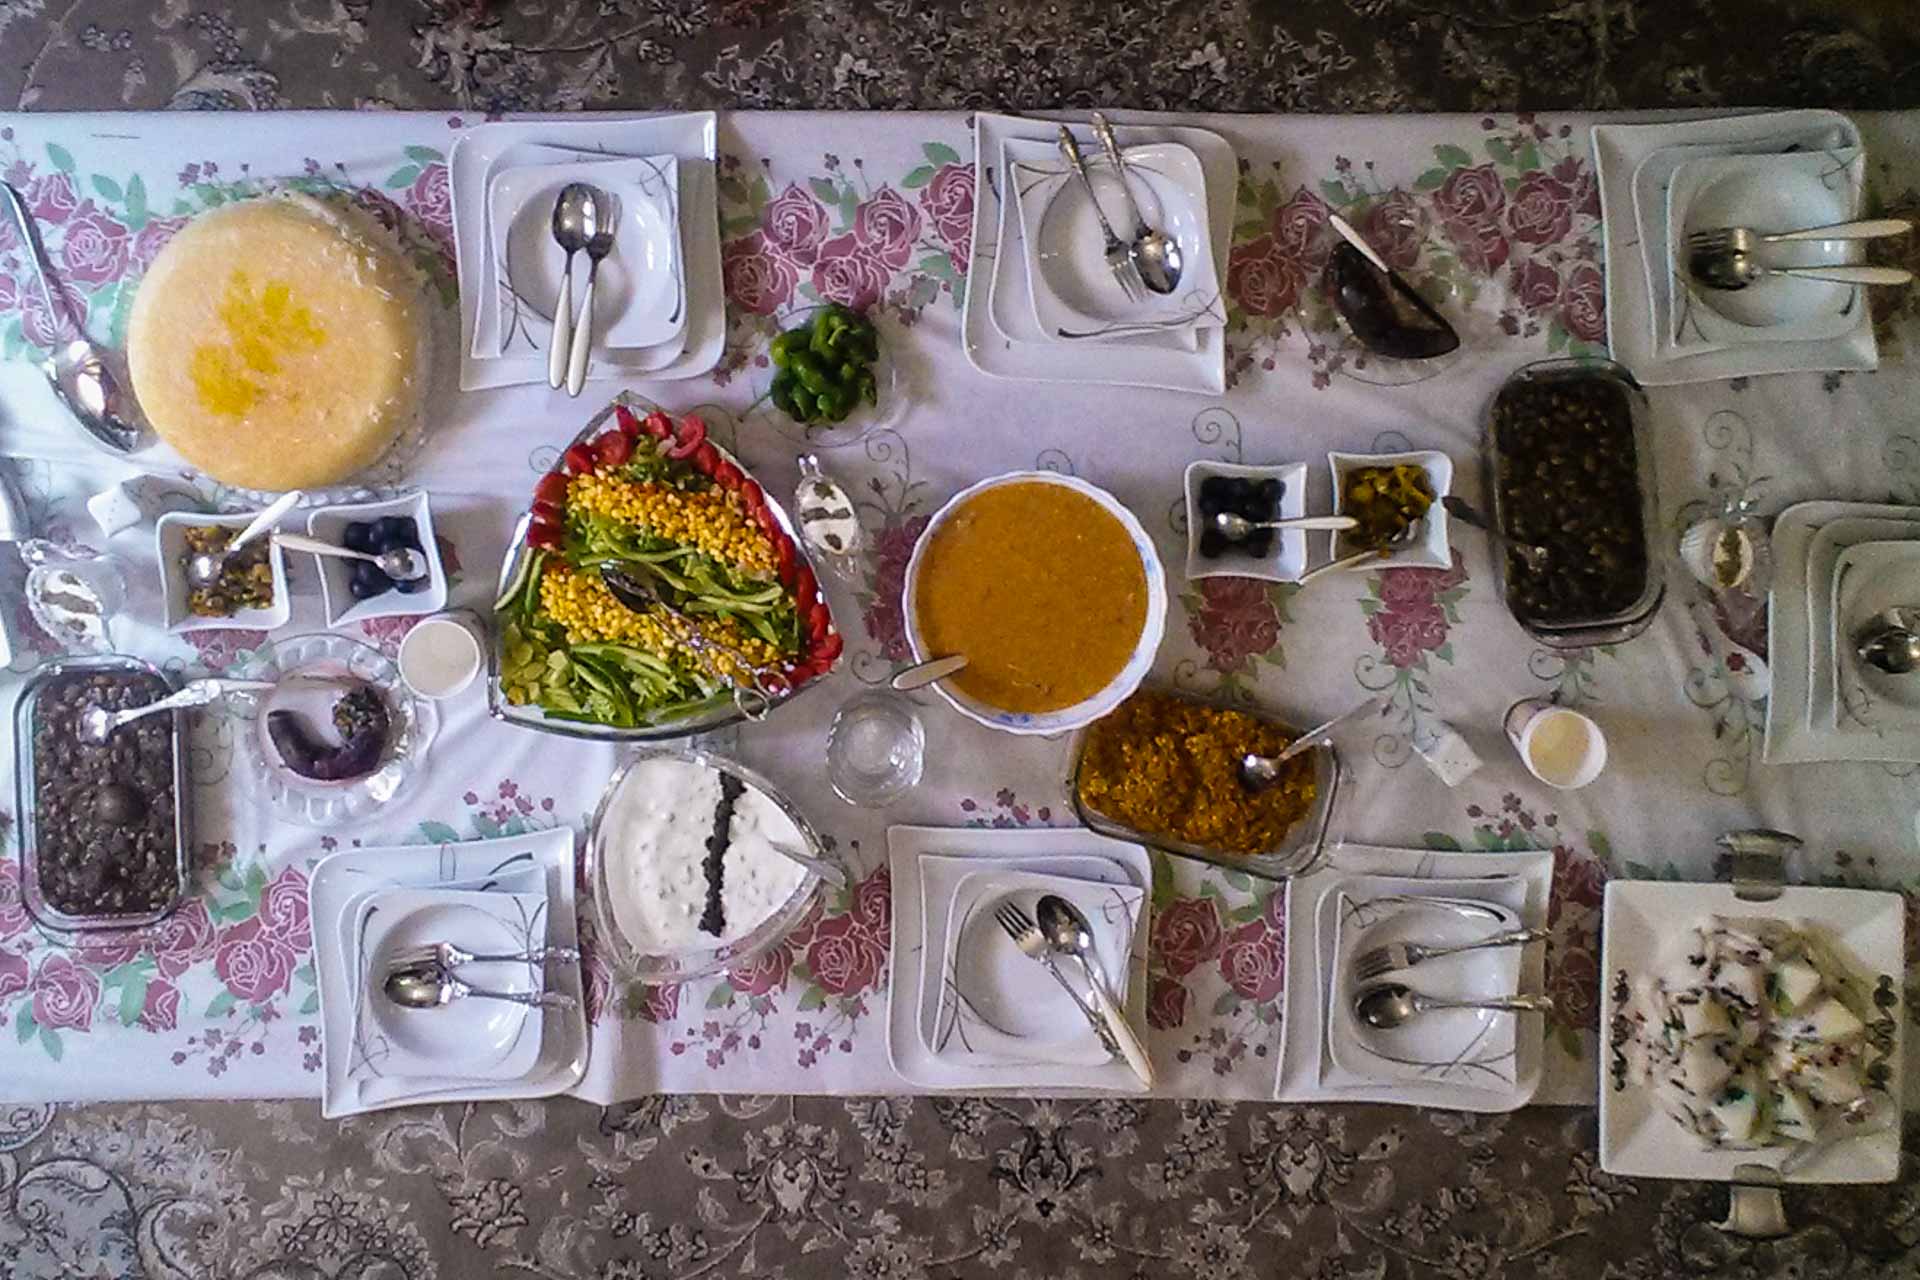 Mesa iraniana posta com pratos típicos no chão em cima da toalha